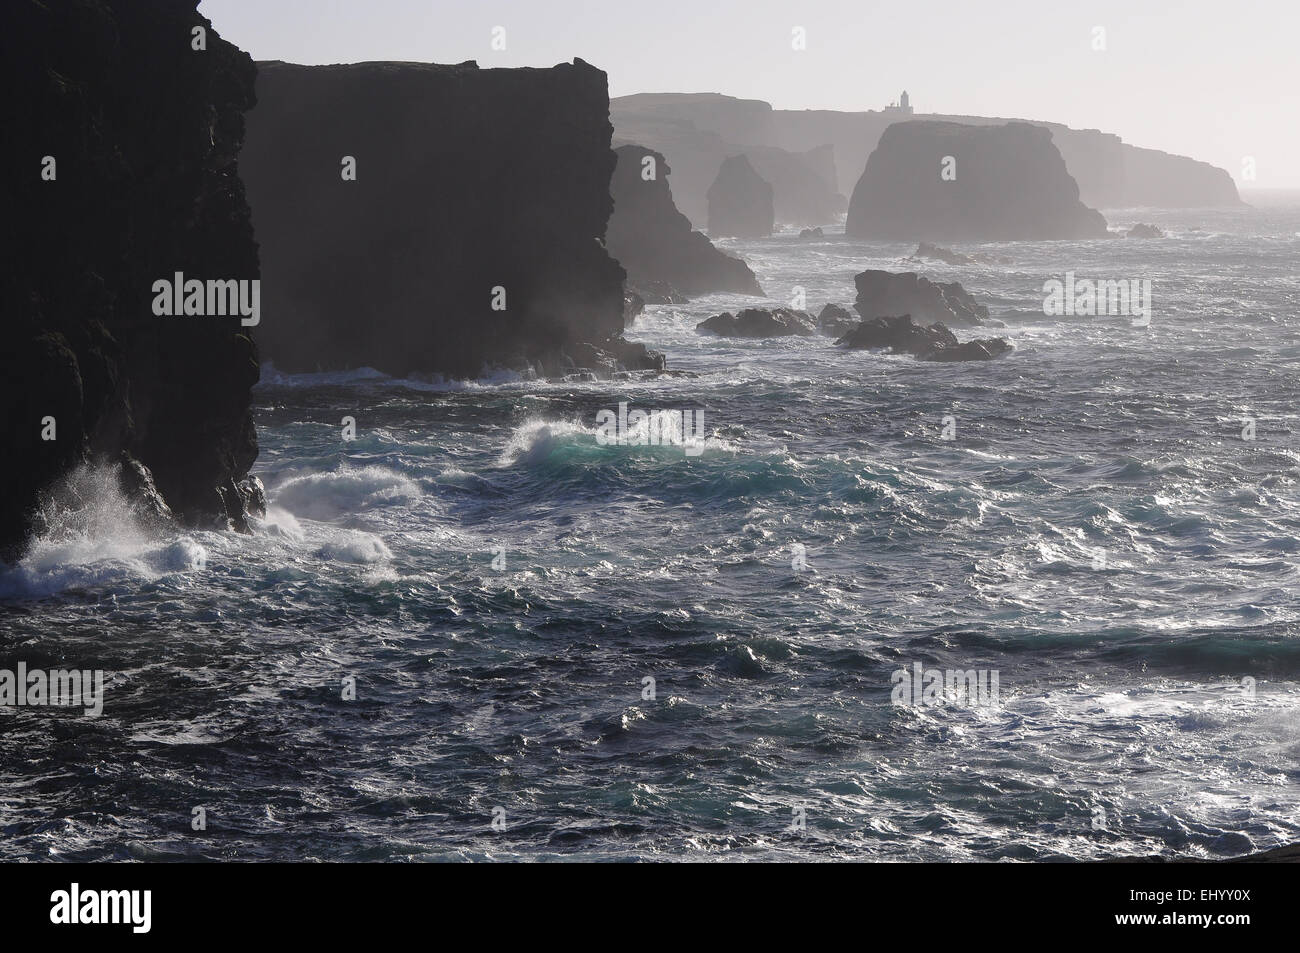 La Scozia, isole Shetland, eshaness, continentale, west coast, Atlantico, rocce, mare, FARO, Gran Bretagna, Europa Foto Stock